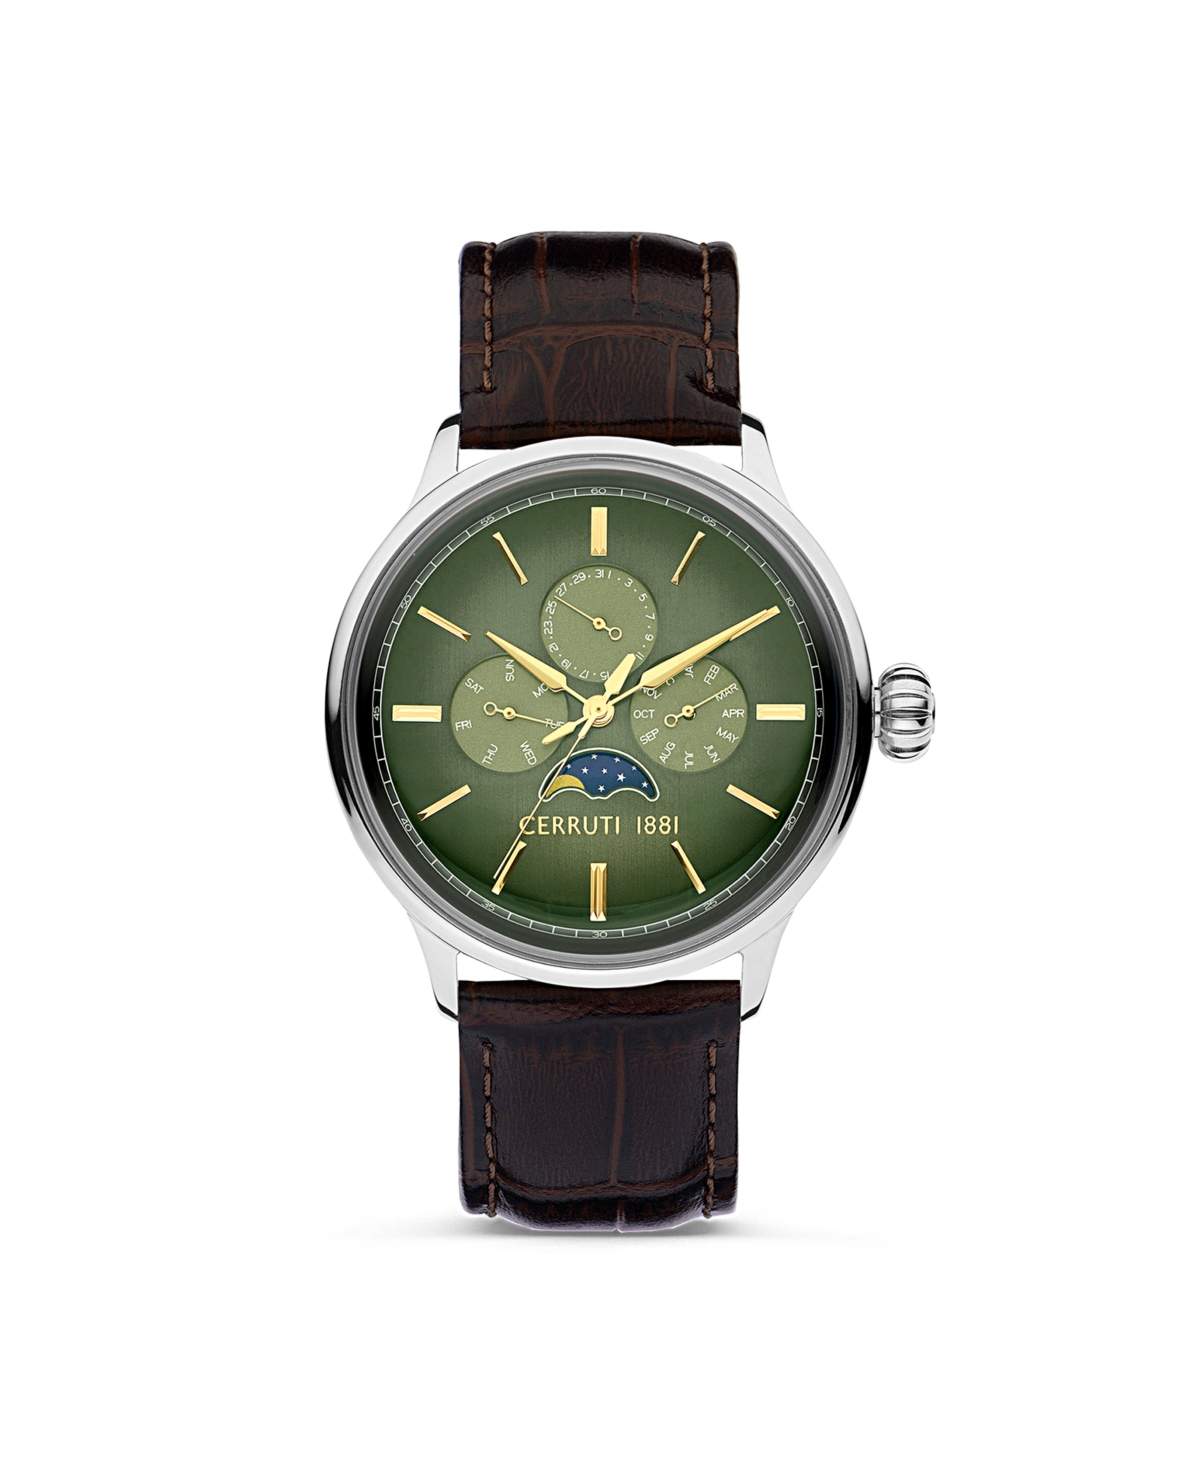 Cerruti 1881 Men's Dervio Collection Brown Dark Genuine Leather Strap Watch 43mm